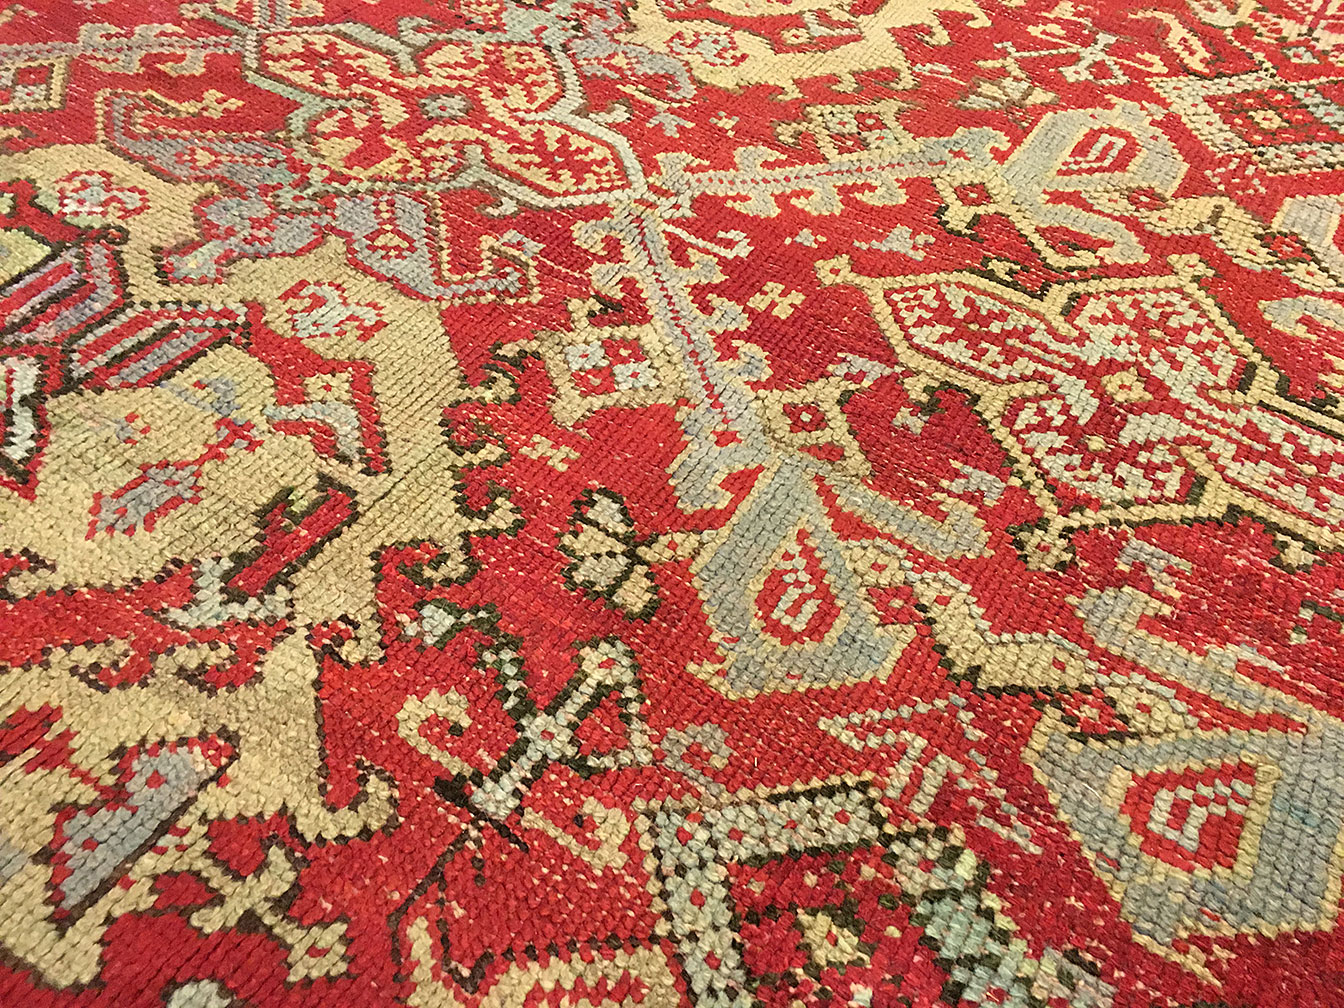 Antique oushak Carpet - # 51426